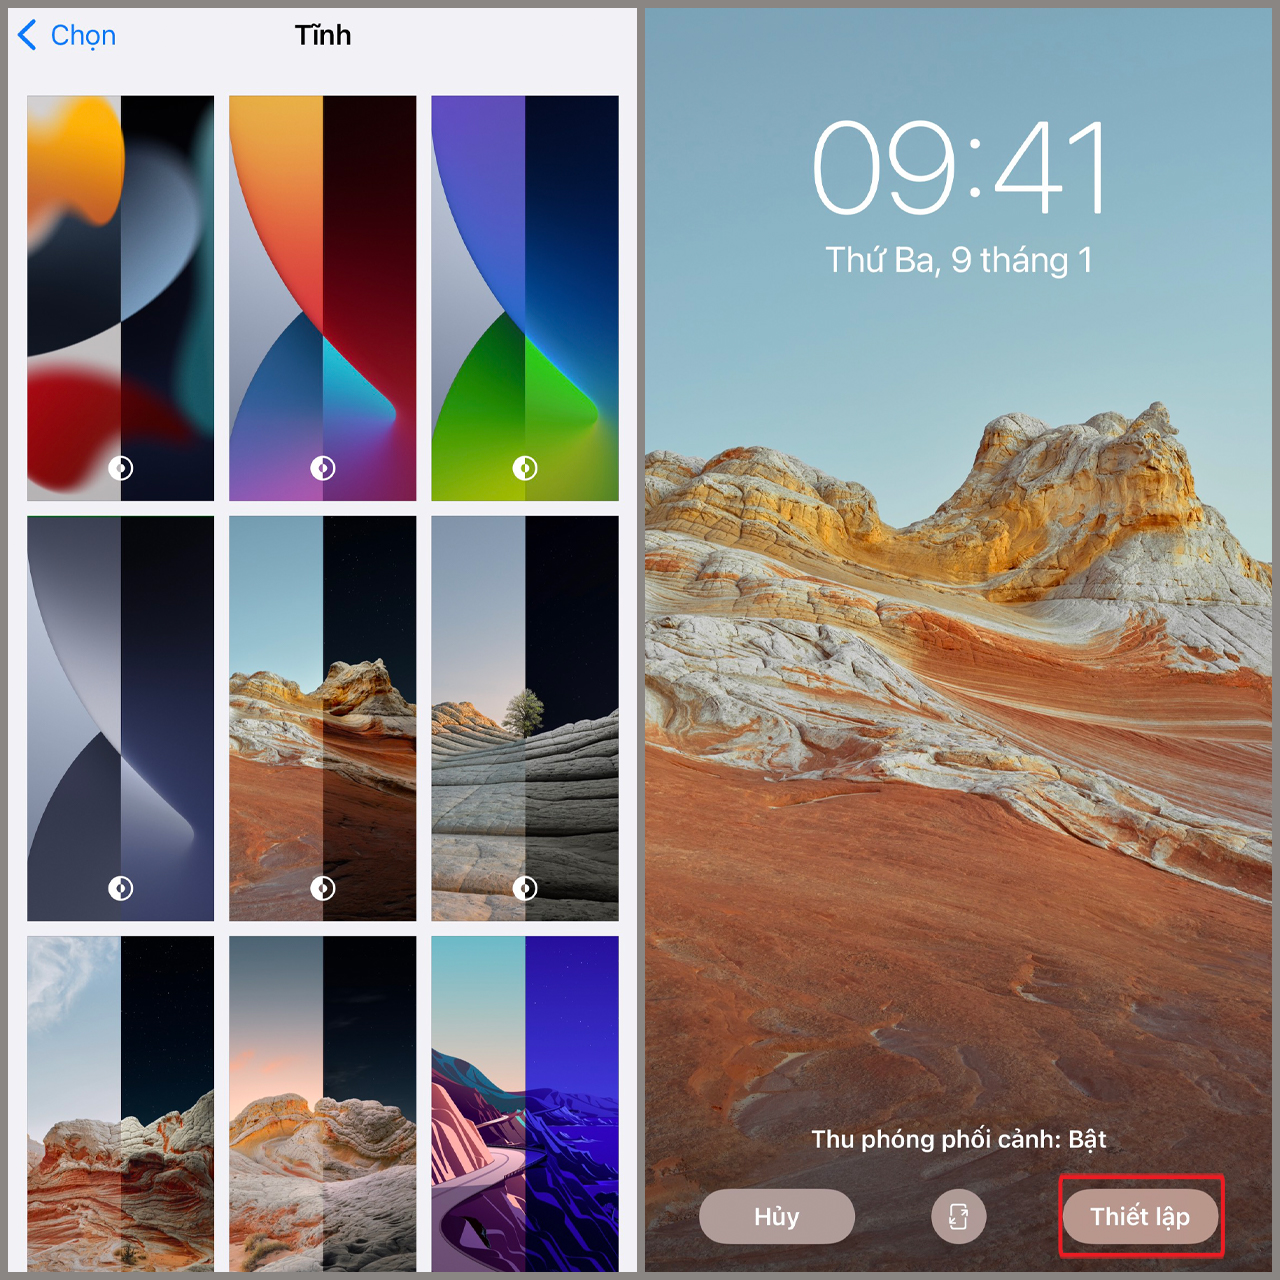 Cách tùy biến giao diện ứng dụng iPhone theo một tone màu riêng